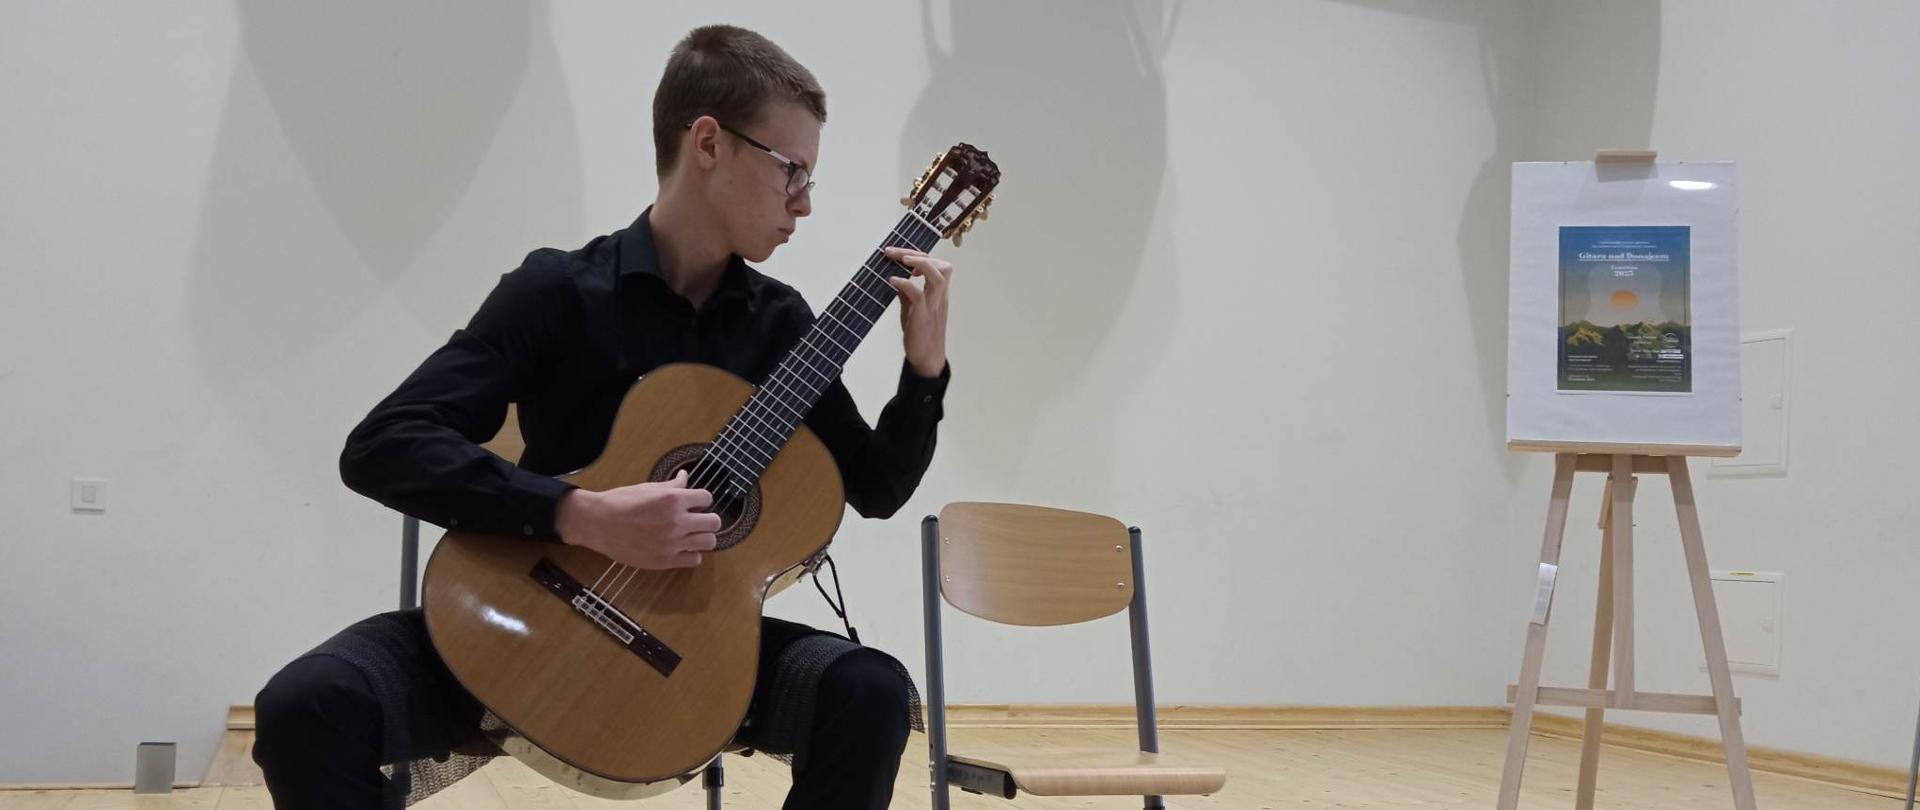 Filip Łachut podczas występu na konkursie gitarowym w Krościenku